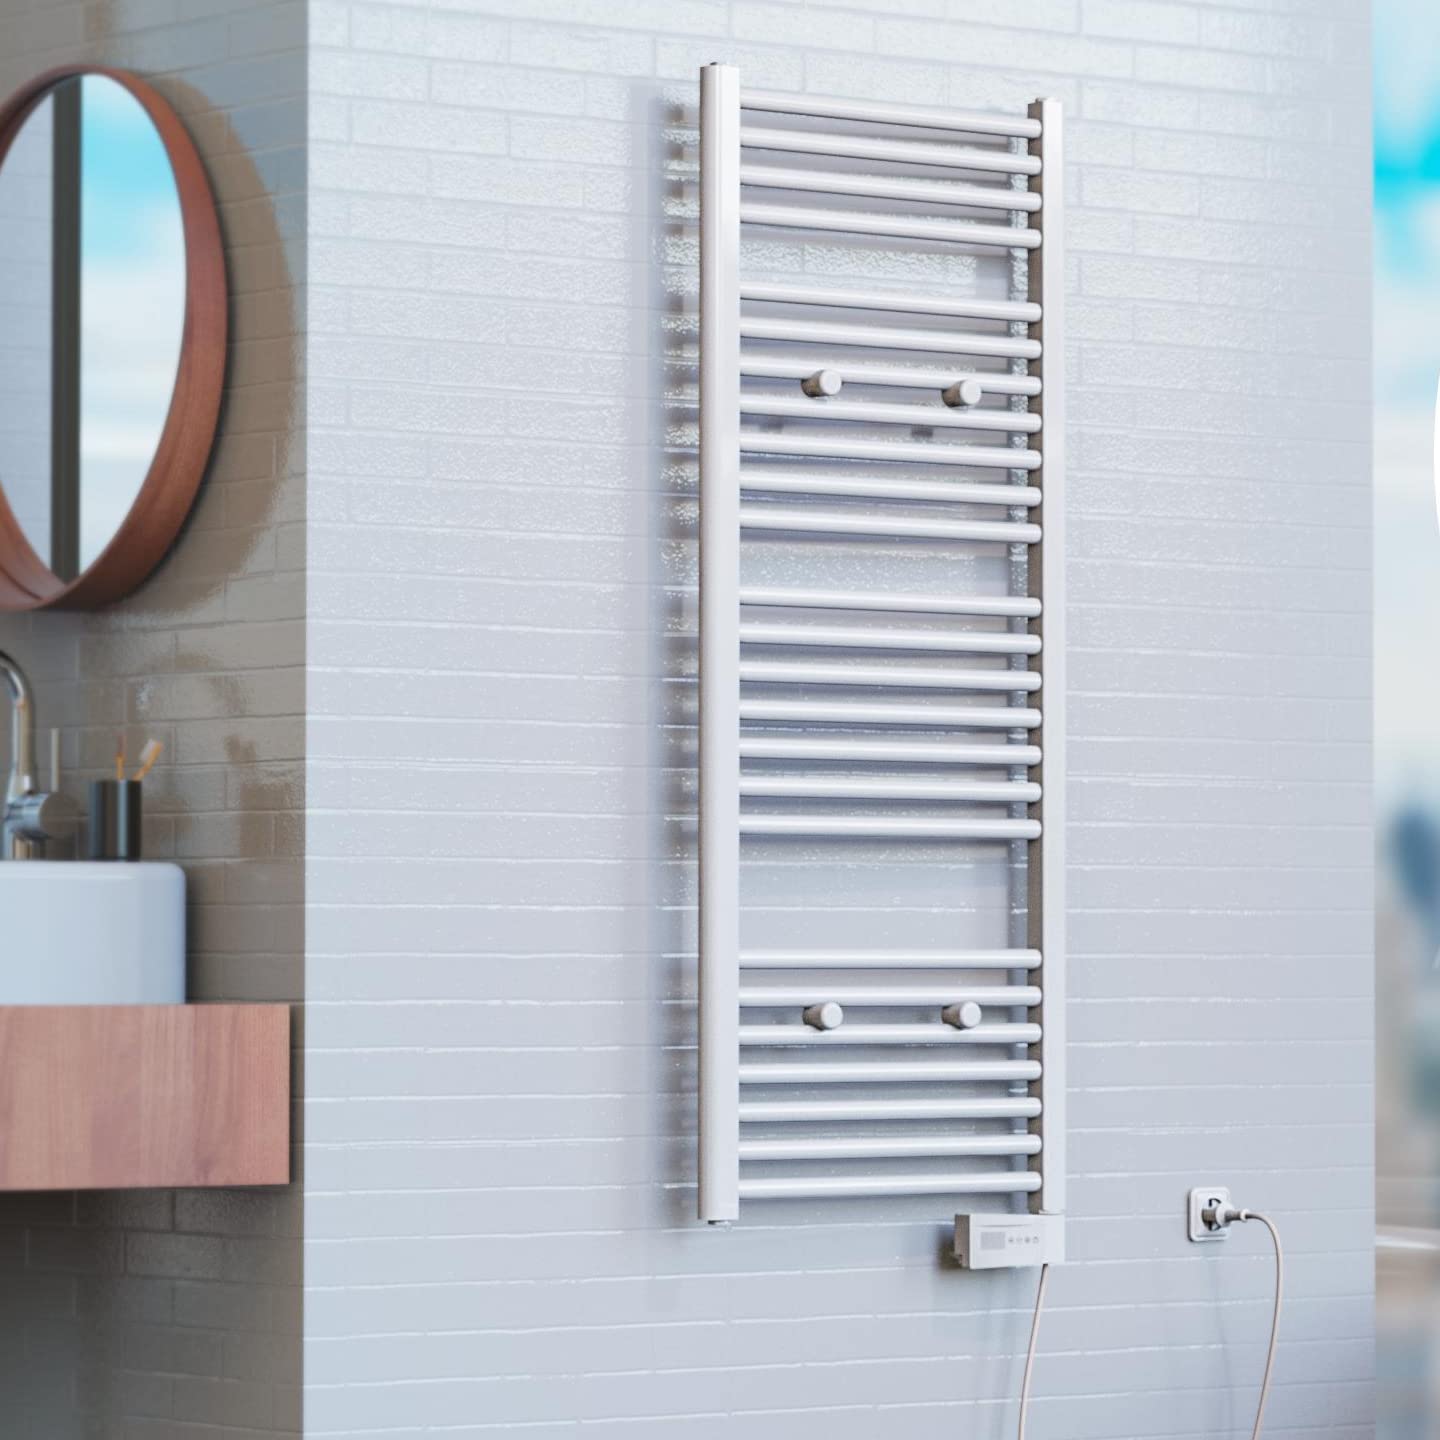 EISL Badheizkörper elektrisch 50 x 120cm, weiß, Handtuchheizkörper für das Badezimmer, Handtuchhalter, elektrischer Handtuchwärmer mit Heizstab und Zeitschaltuhr, BHKWZ1